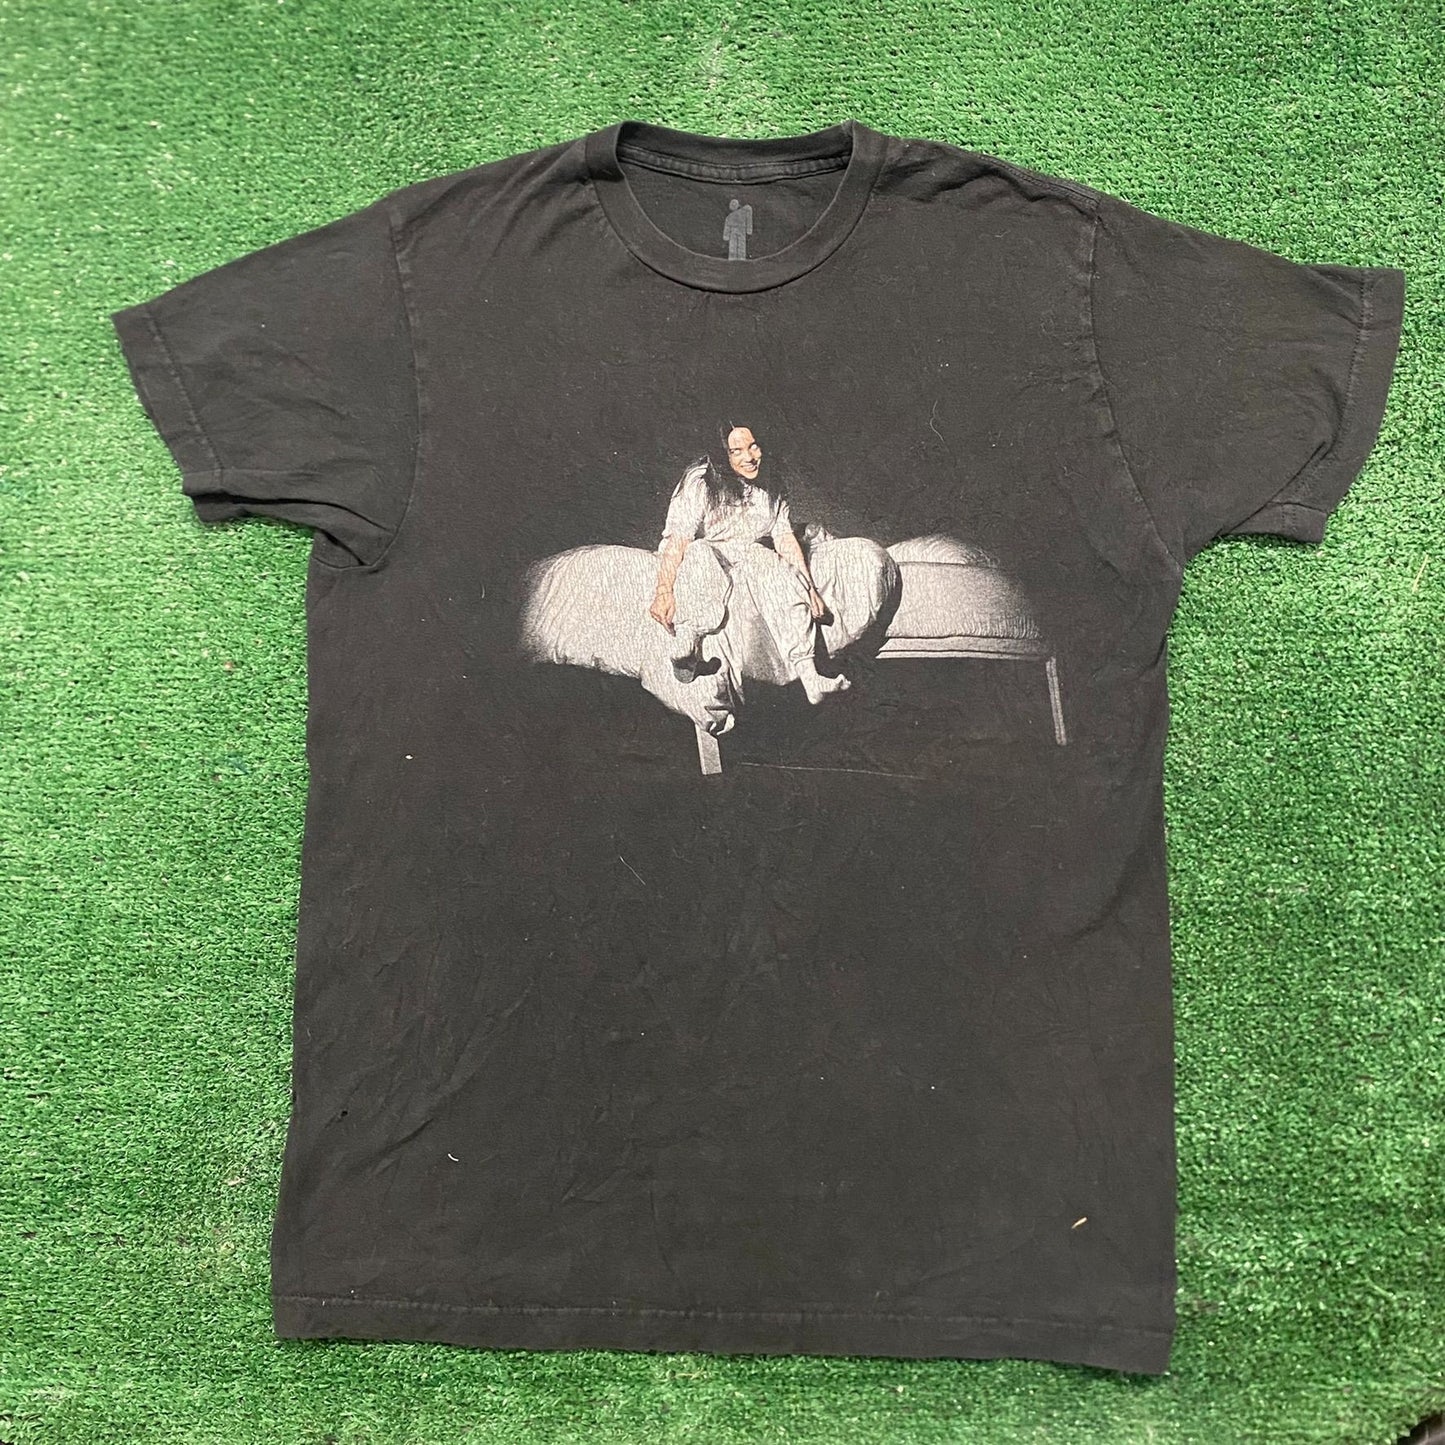 Essential Billie Eilish Album Art Goth Emo Band T-Shirt